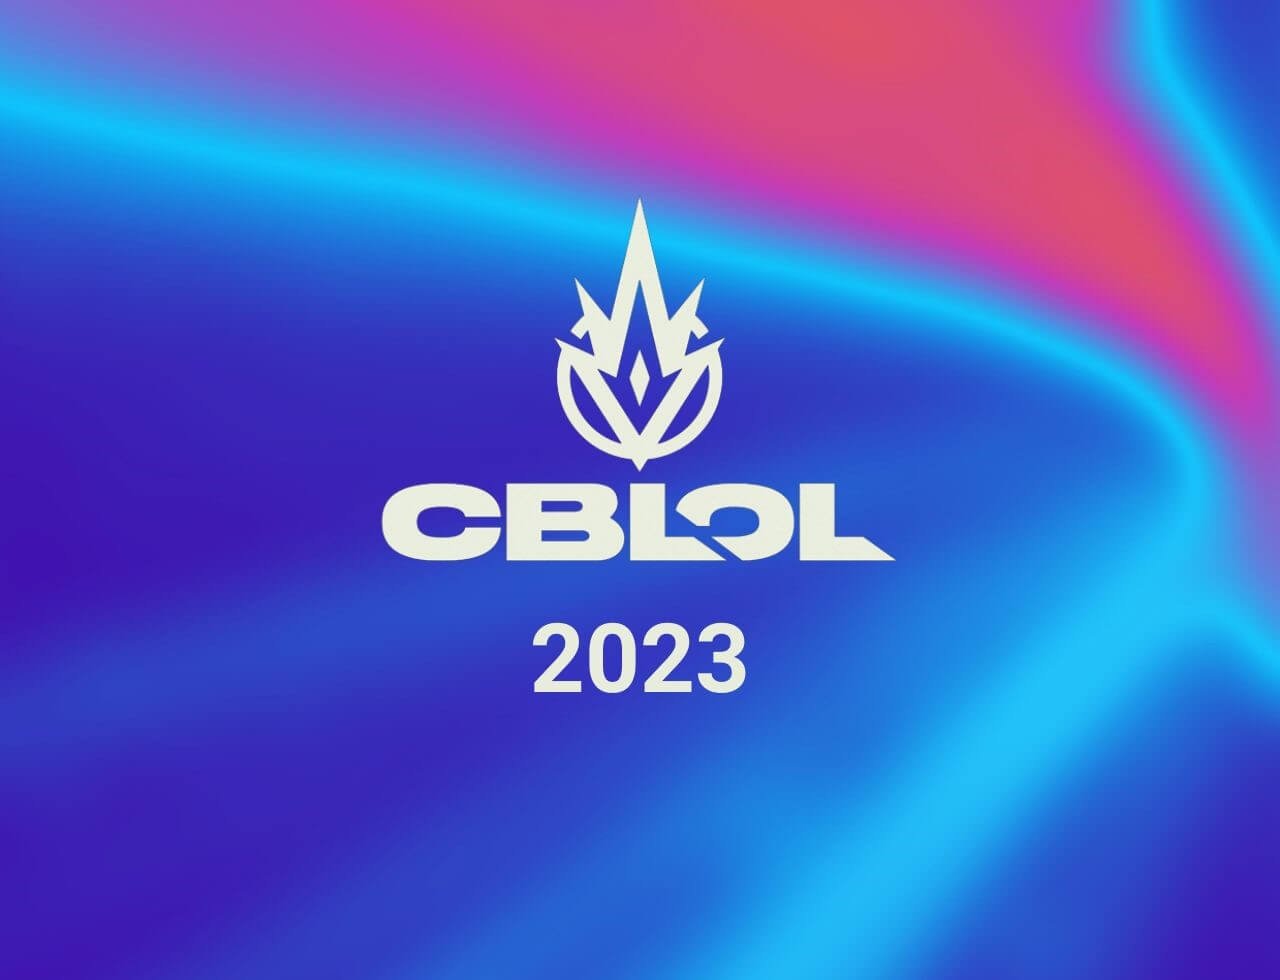 CBLOL 2023 Melhores times e tabela